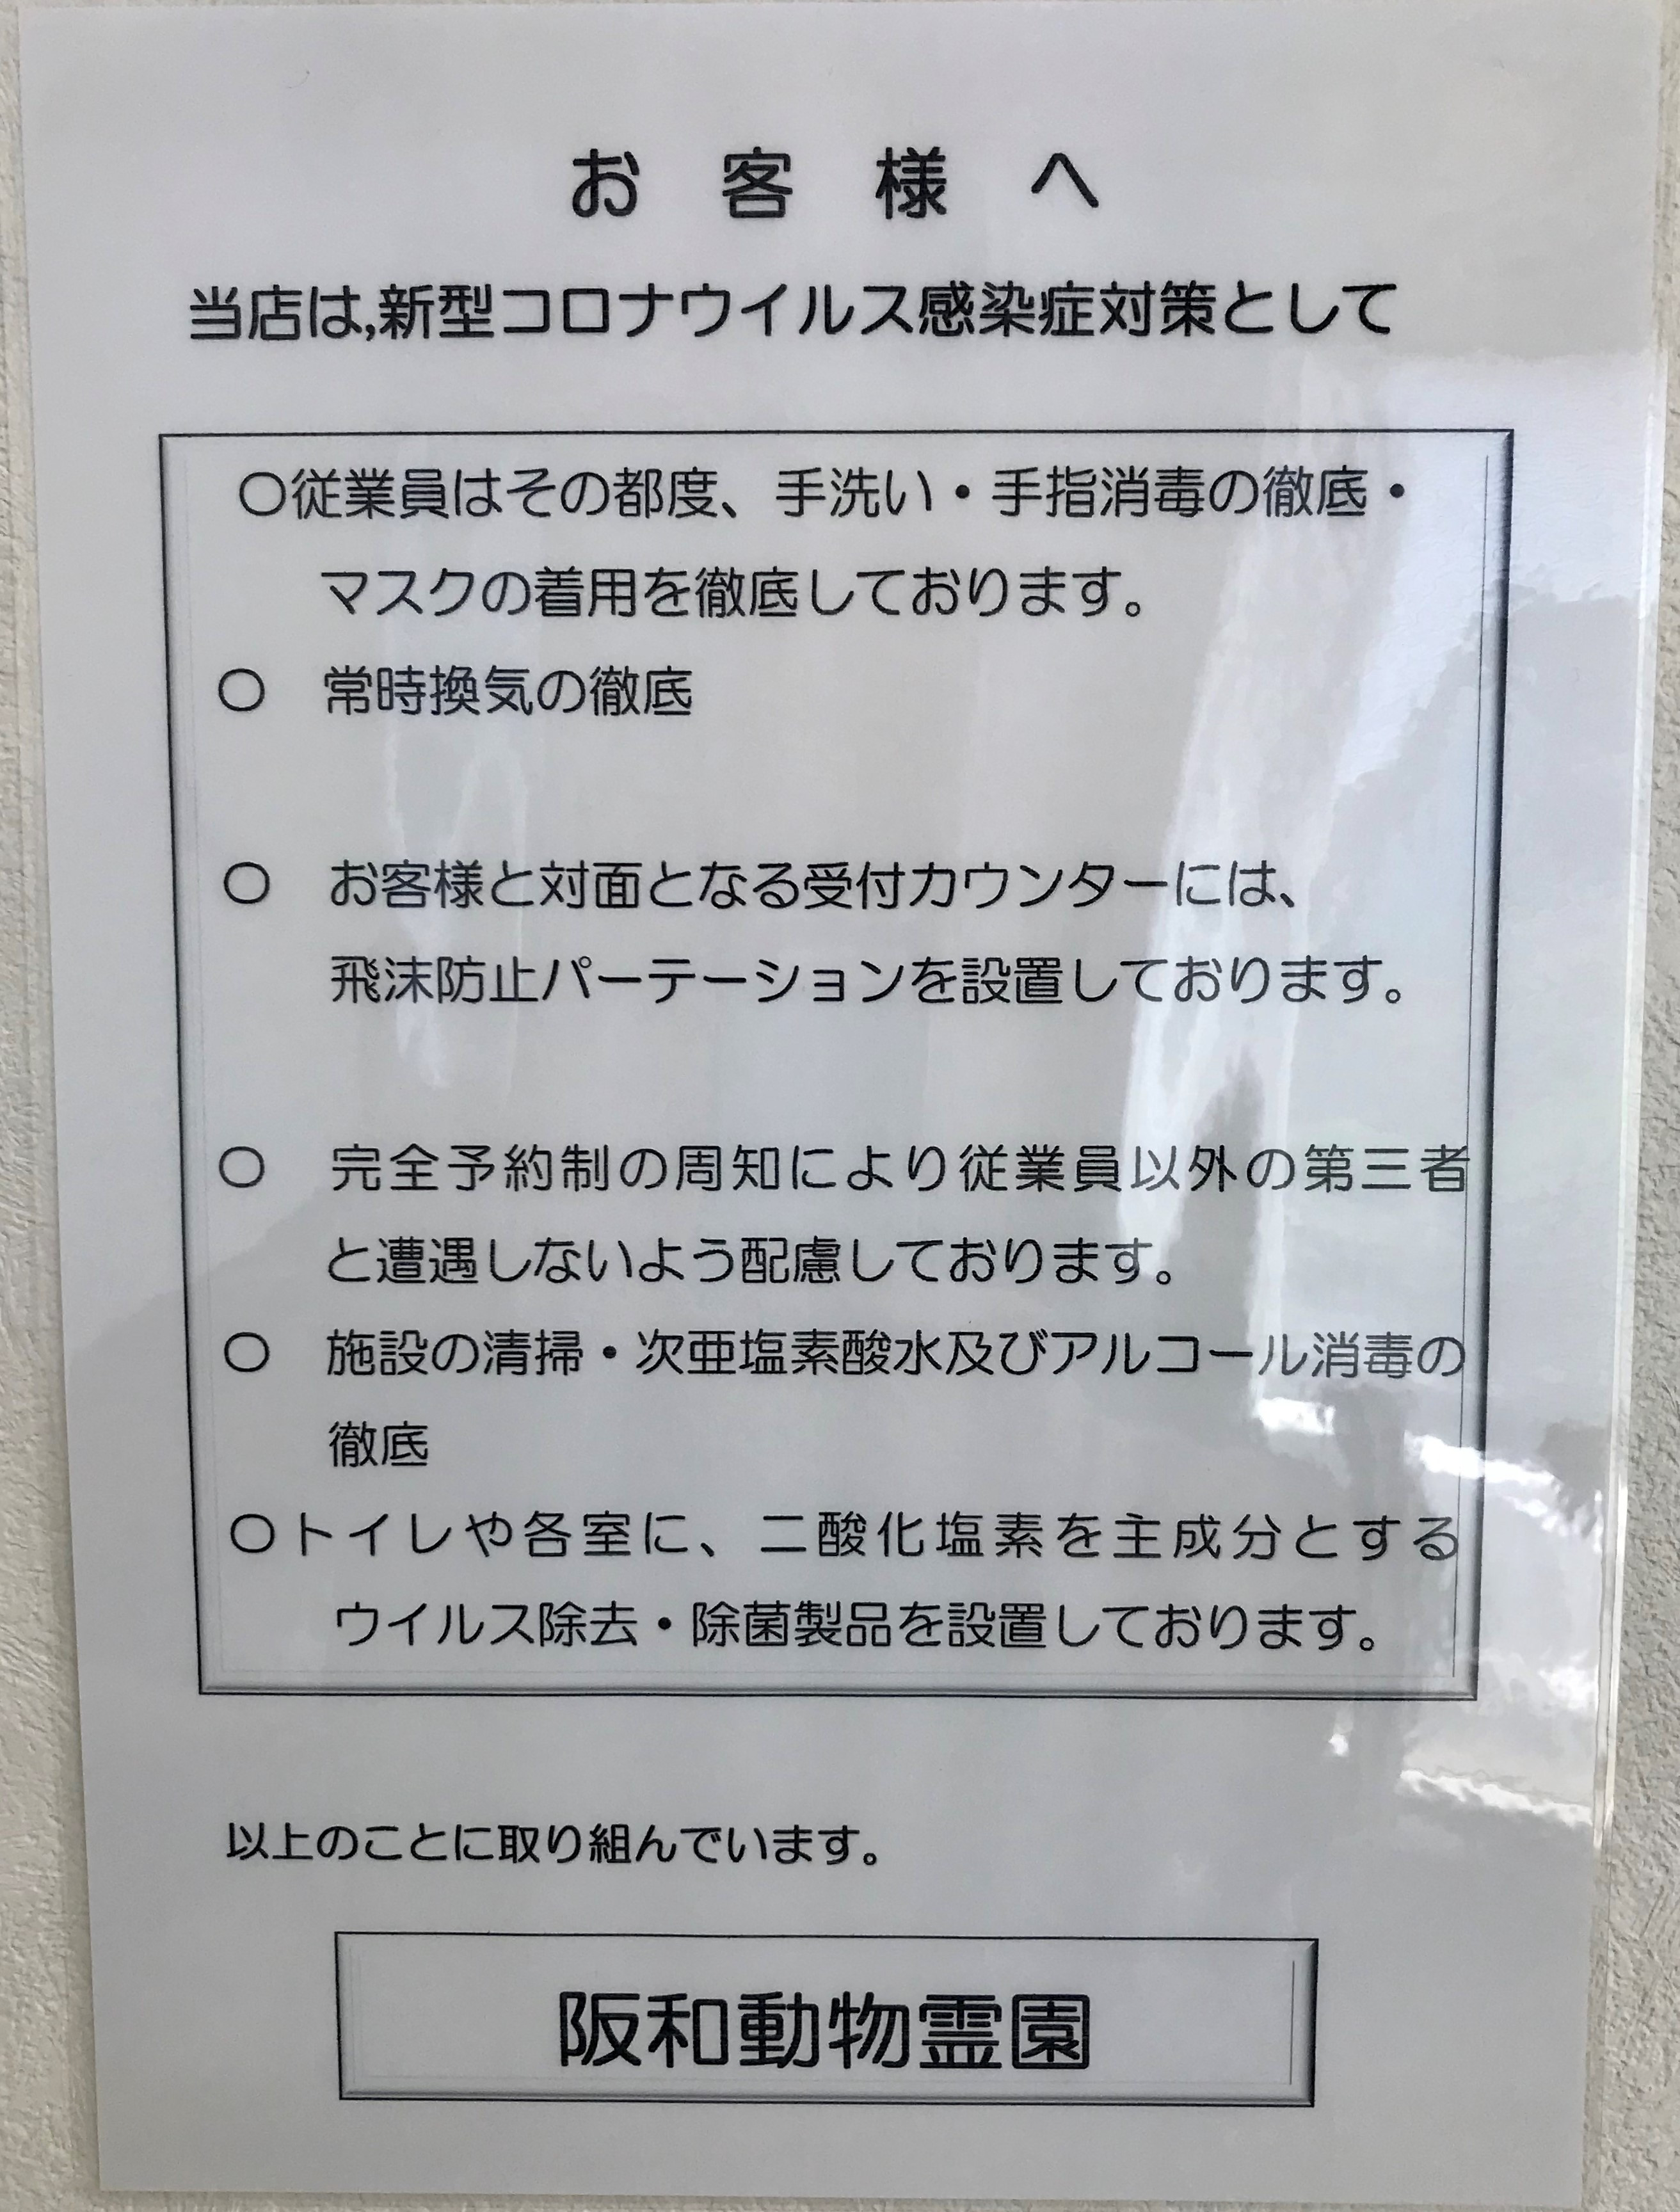 大阪府感染症対策ガイドラインを遵守しています